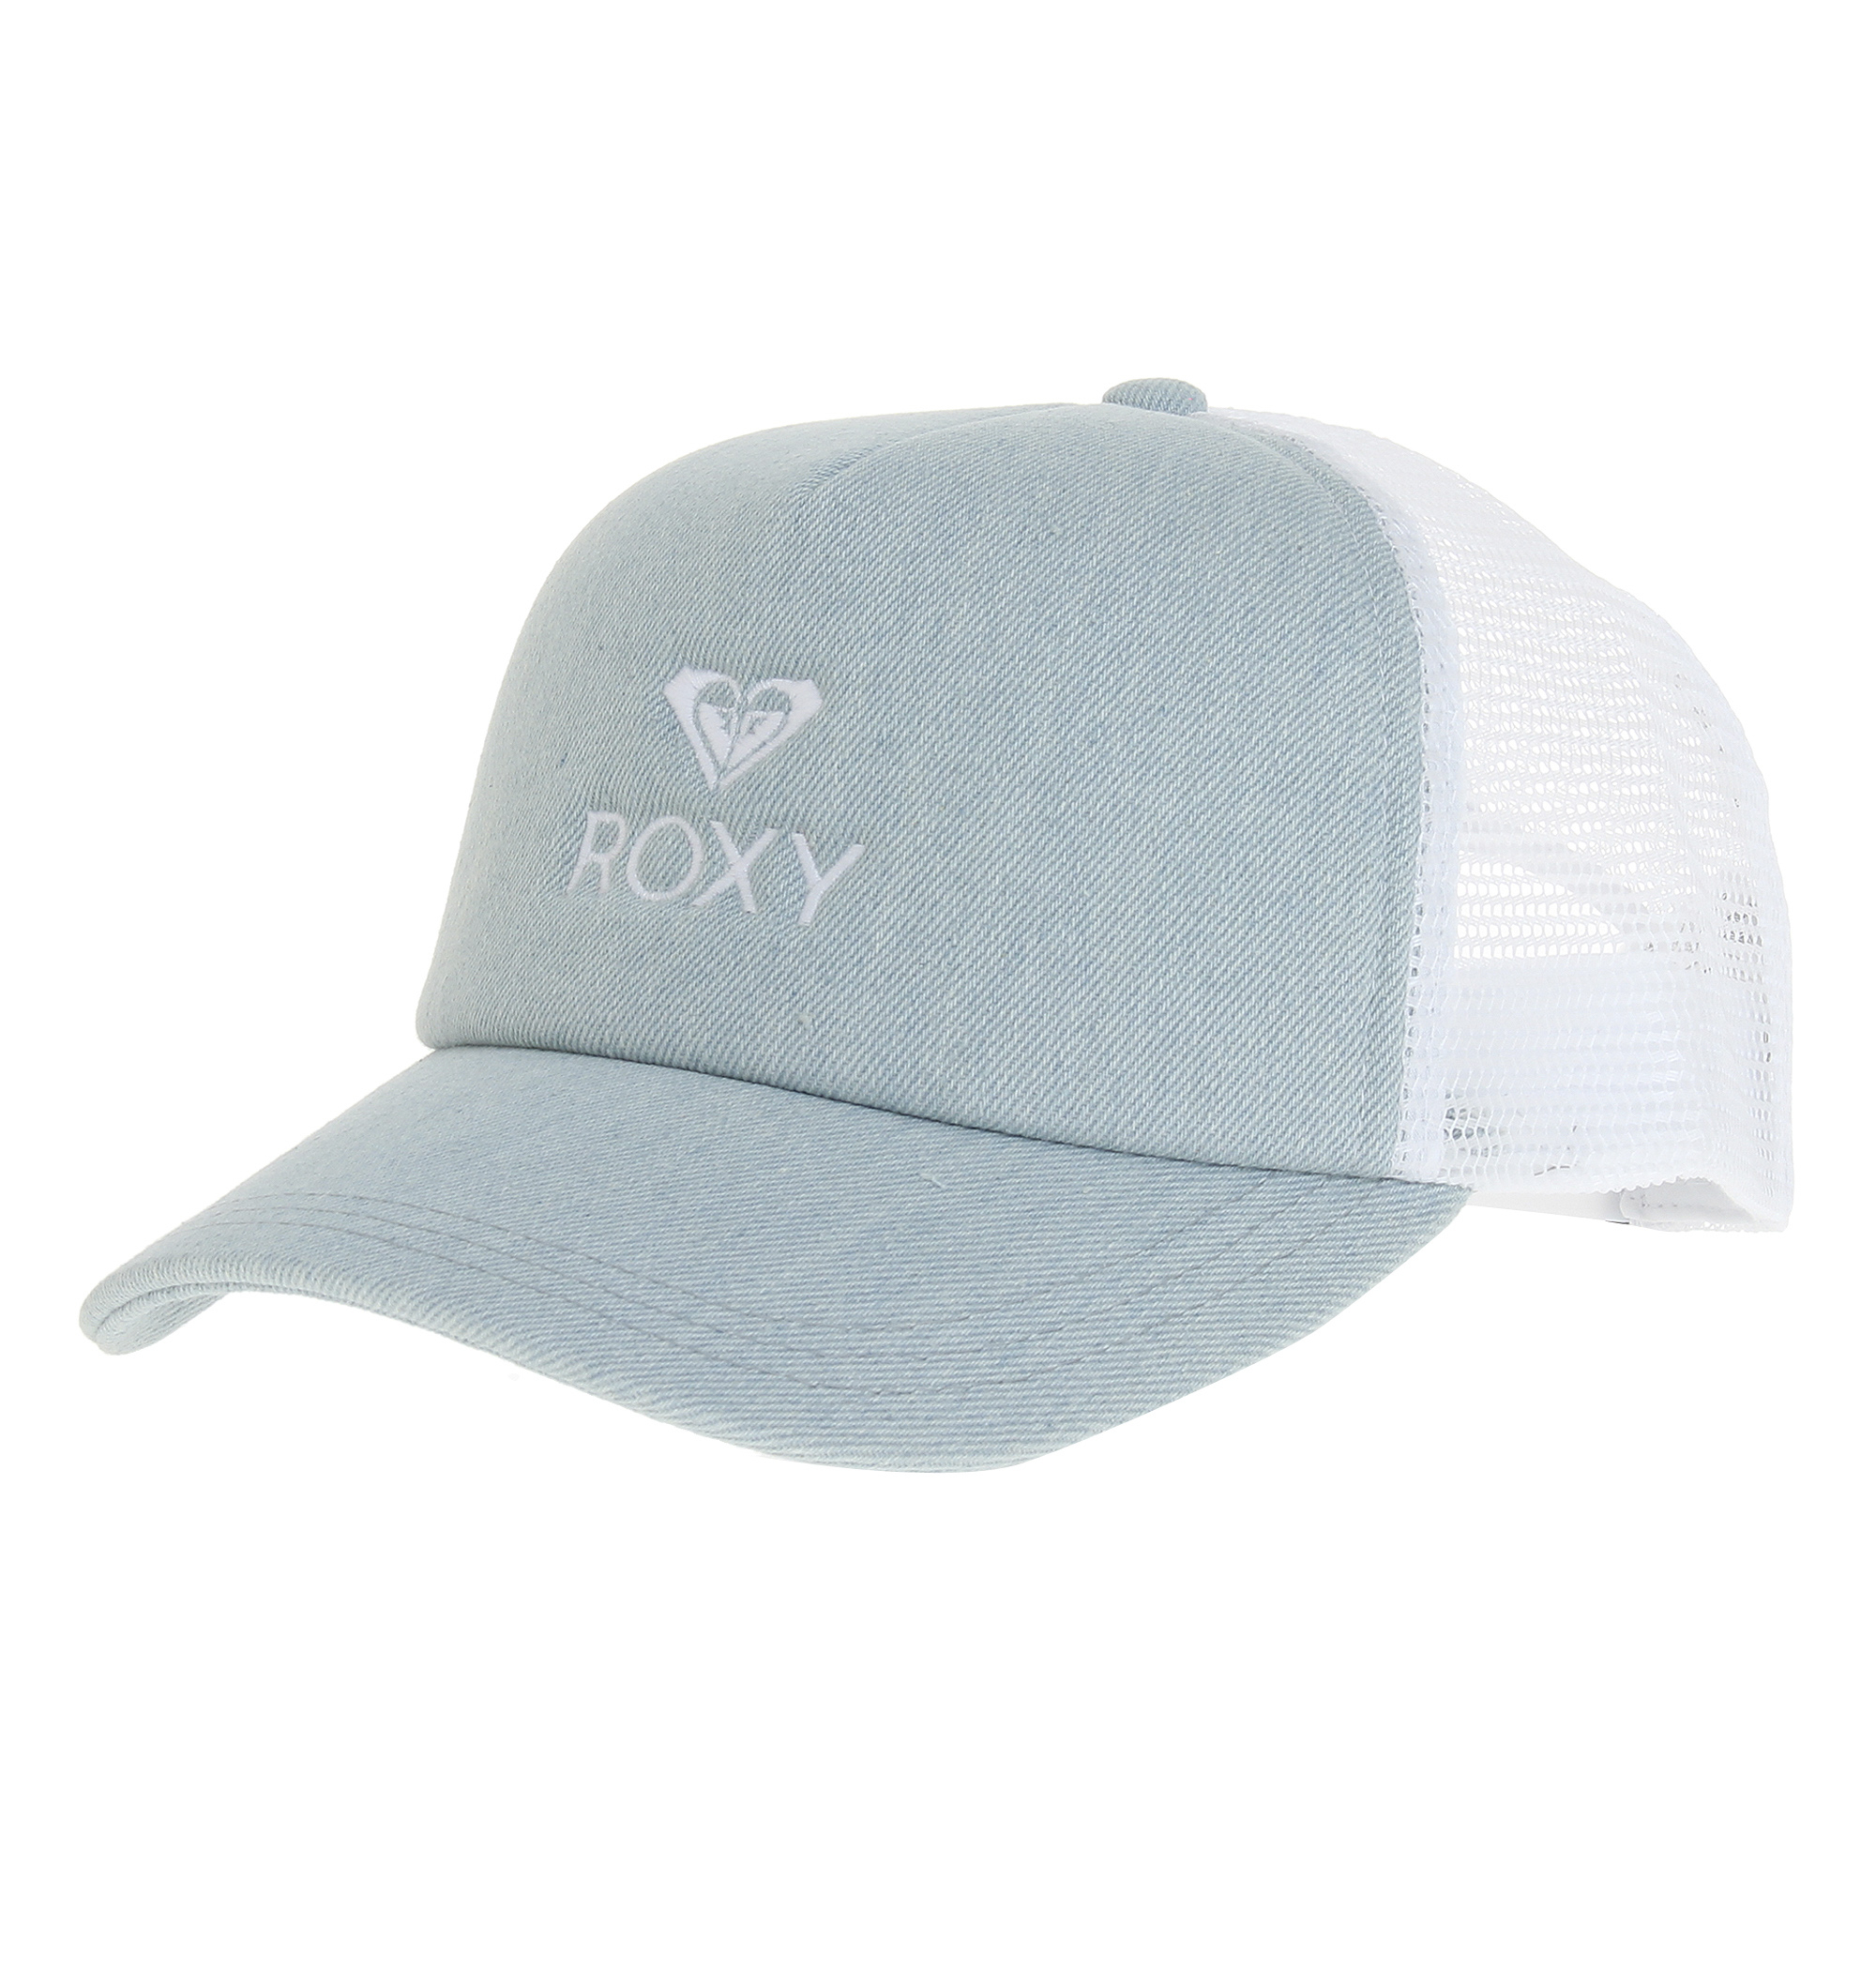 ＜Roxy＞YOURS フロントのブランドアイコンとロゴがさりげないアクセントのスポーティなキャップ